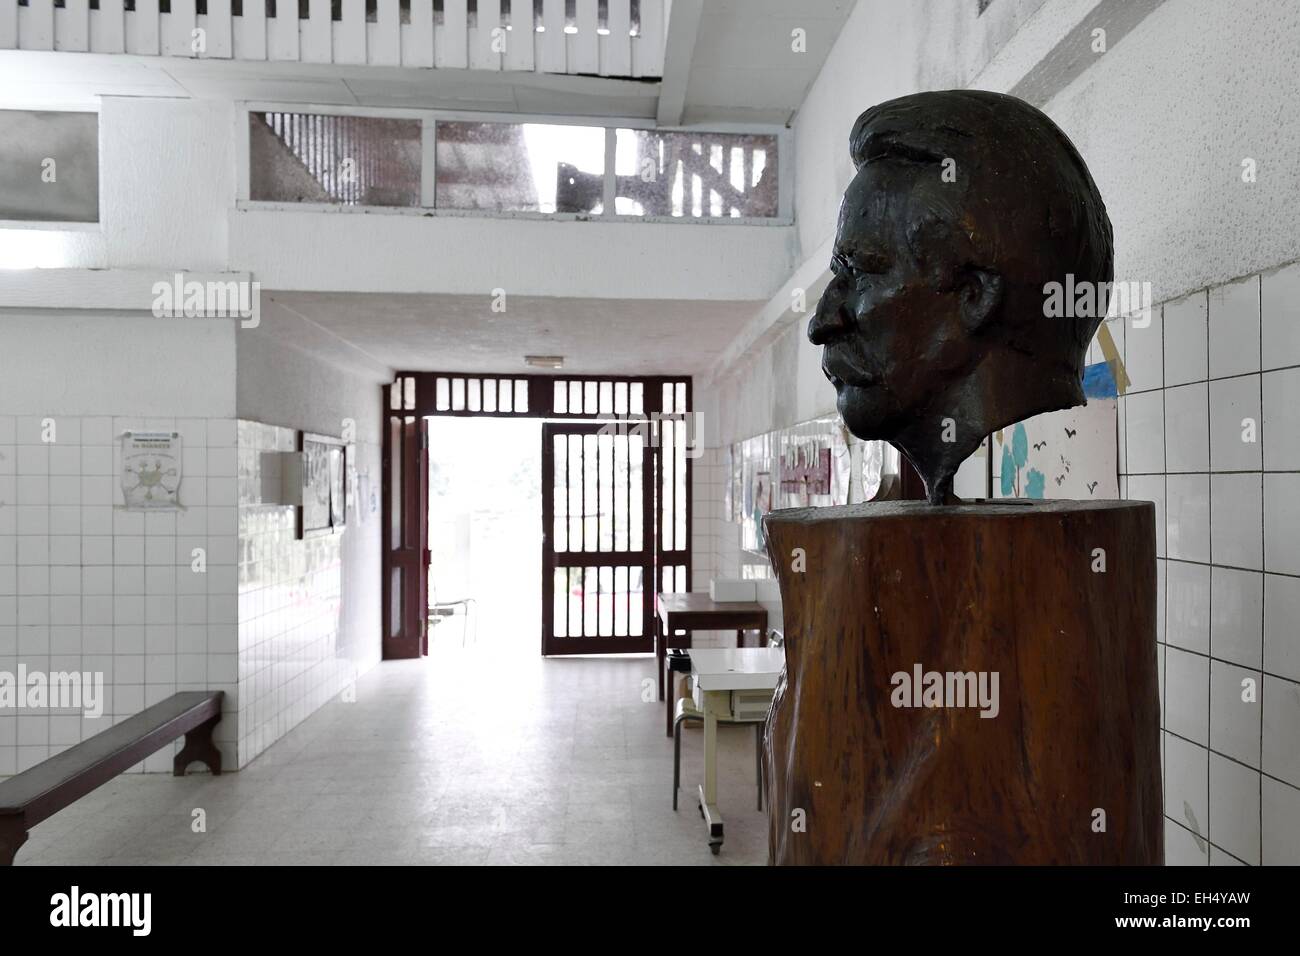 Gabon, Moyen-Ogooue Province, Lambarene, bust of Dr. Schweitzer at the Albert Schweitzer Hospital reception Stock Photo